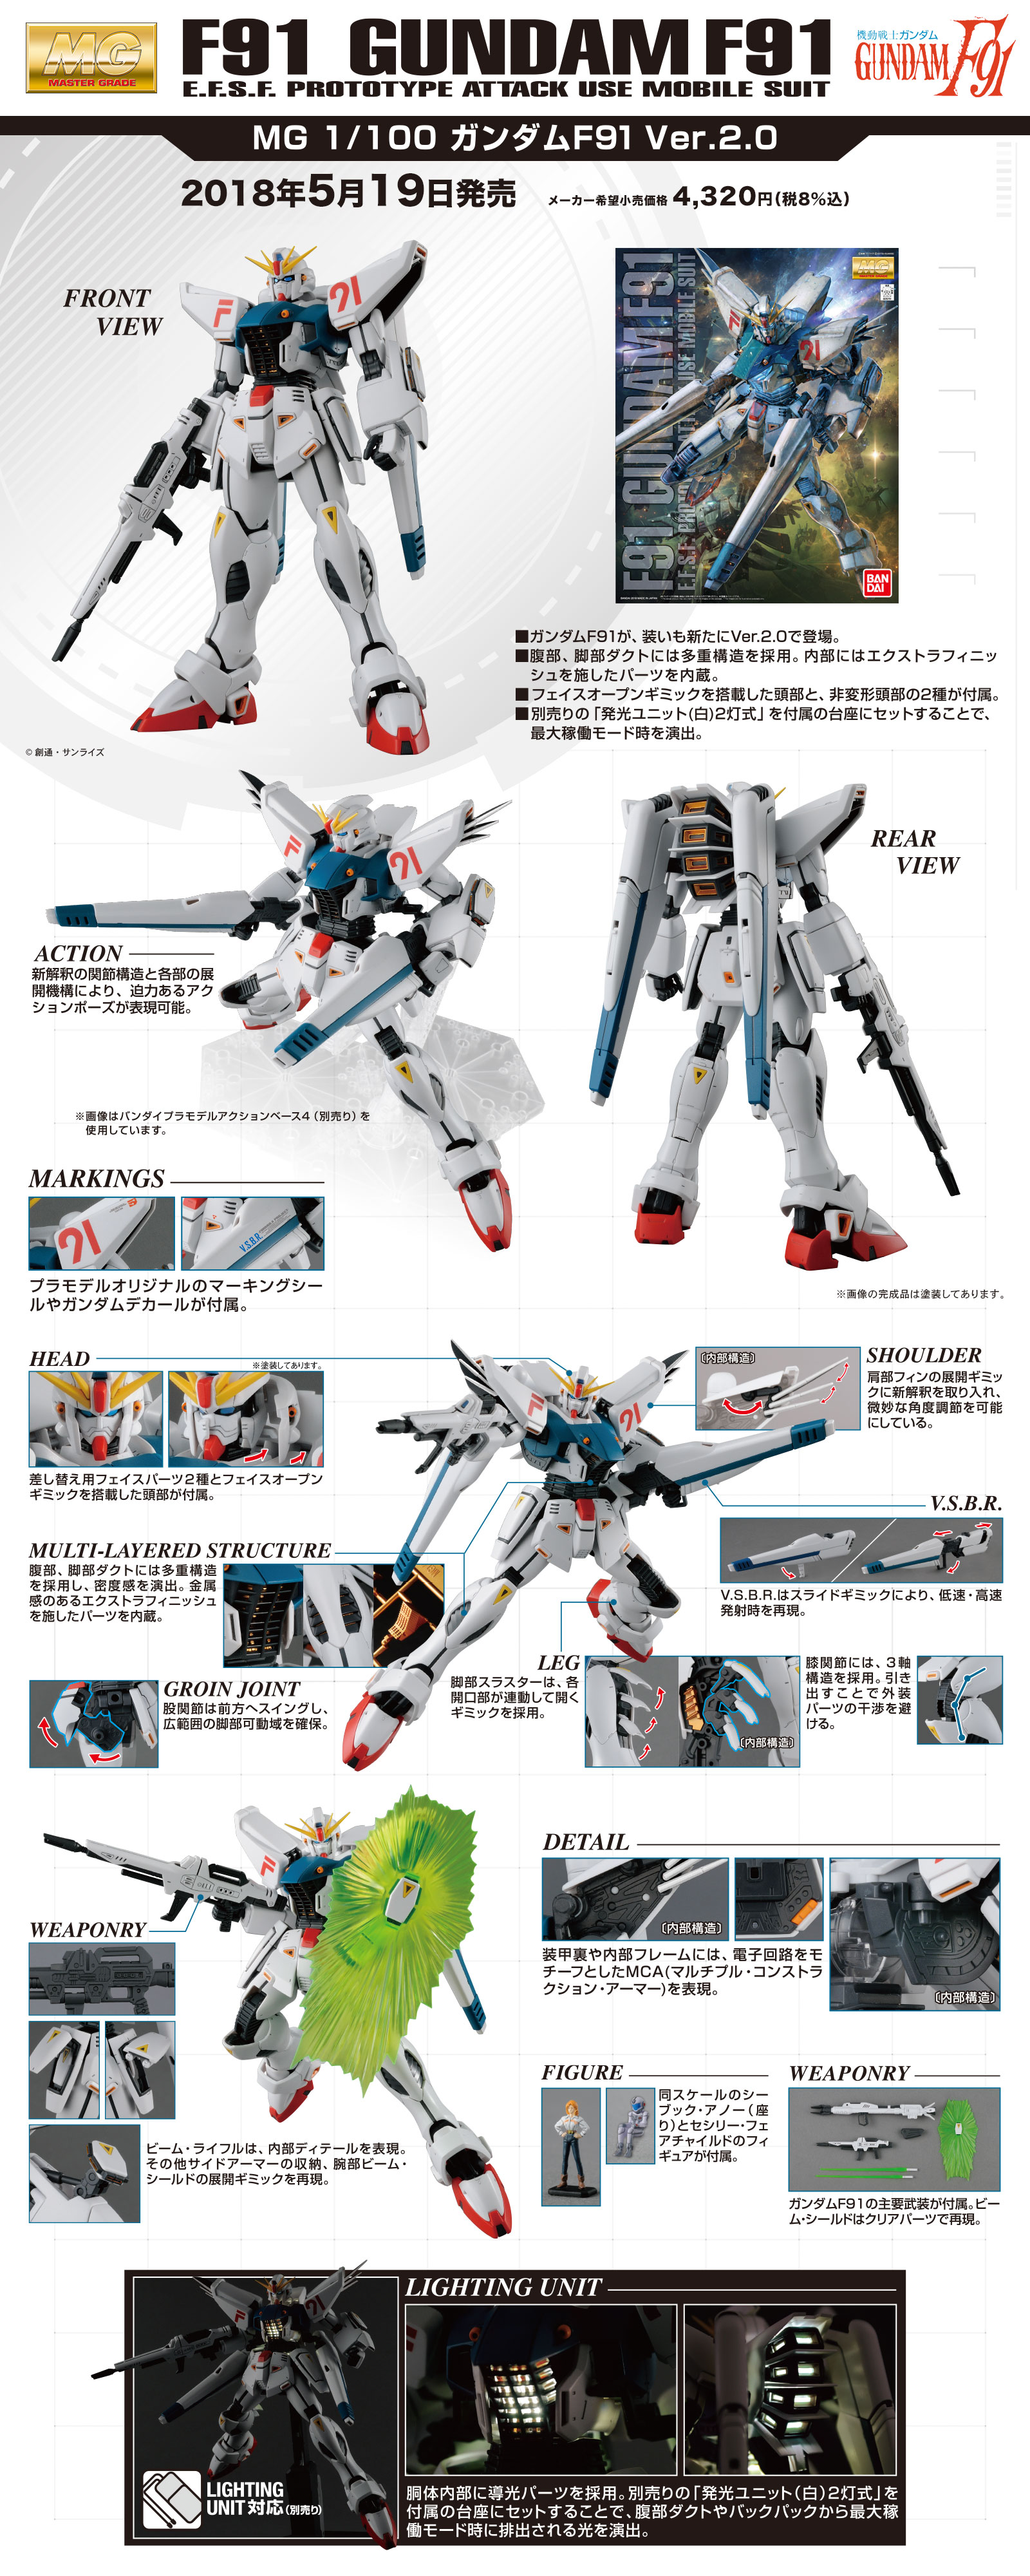 MG 1/100 No.202 Formula 91 Gundam F91 Ver.2.0